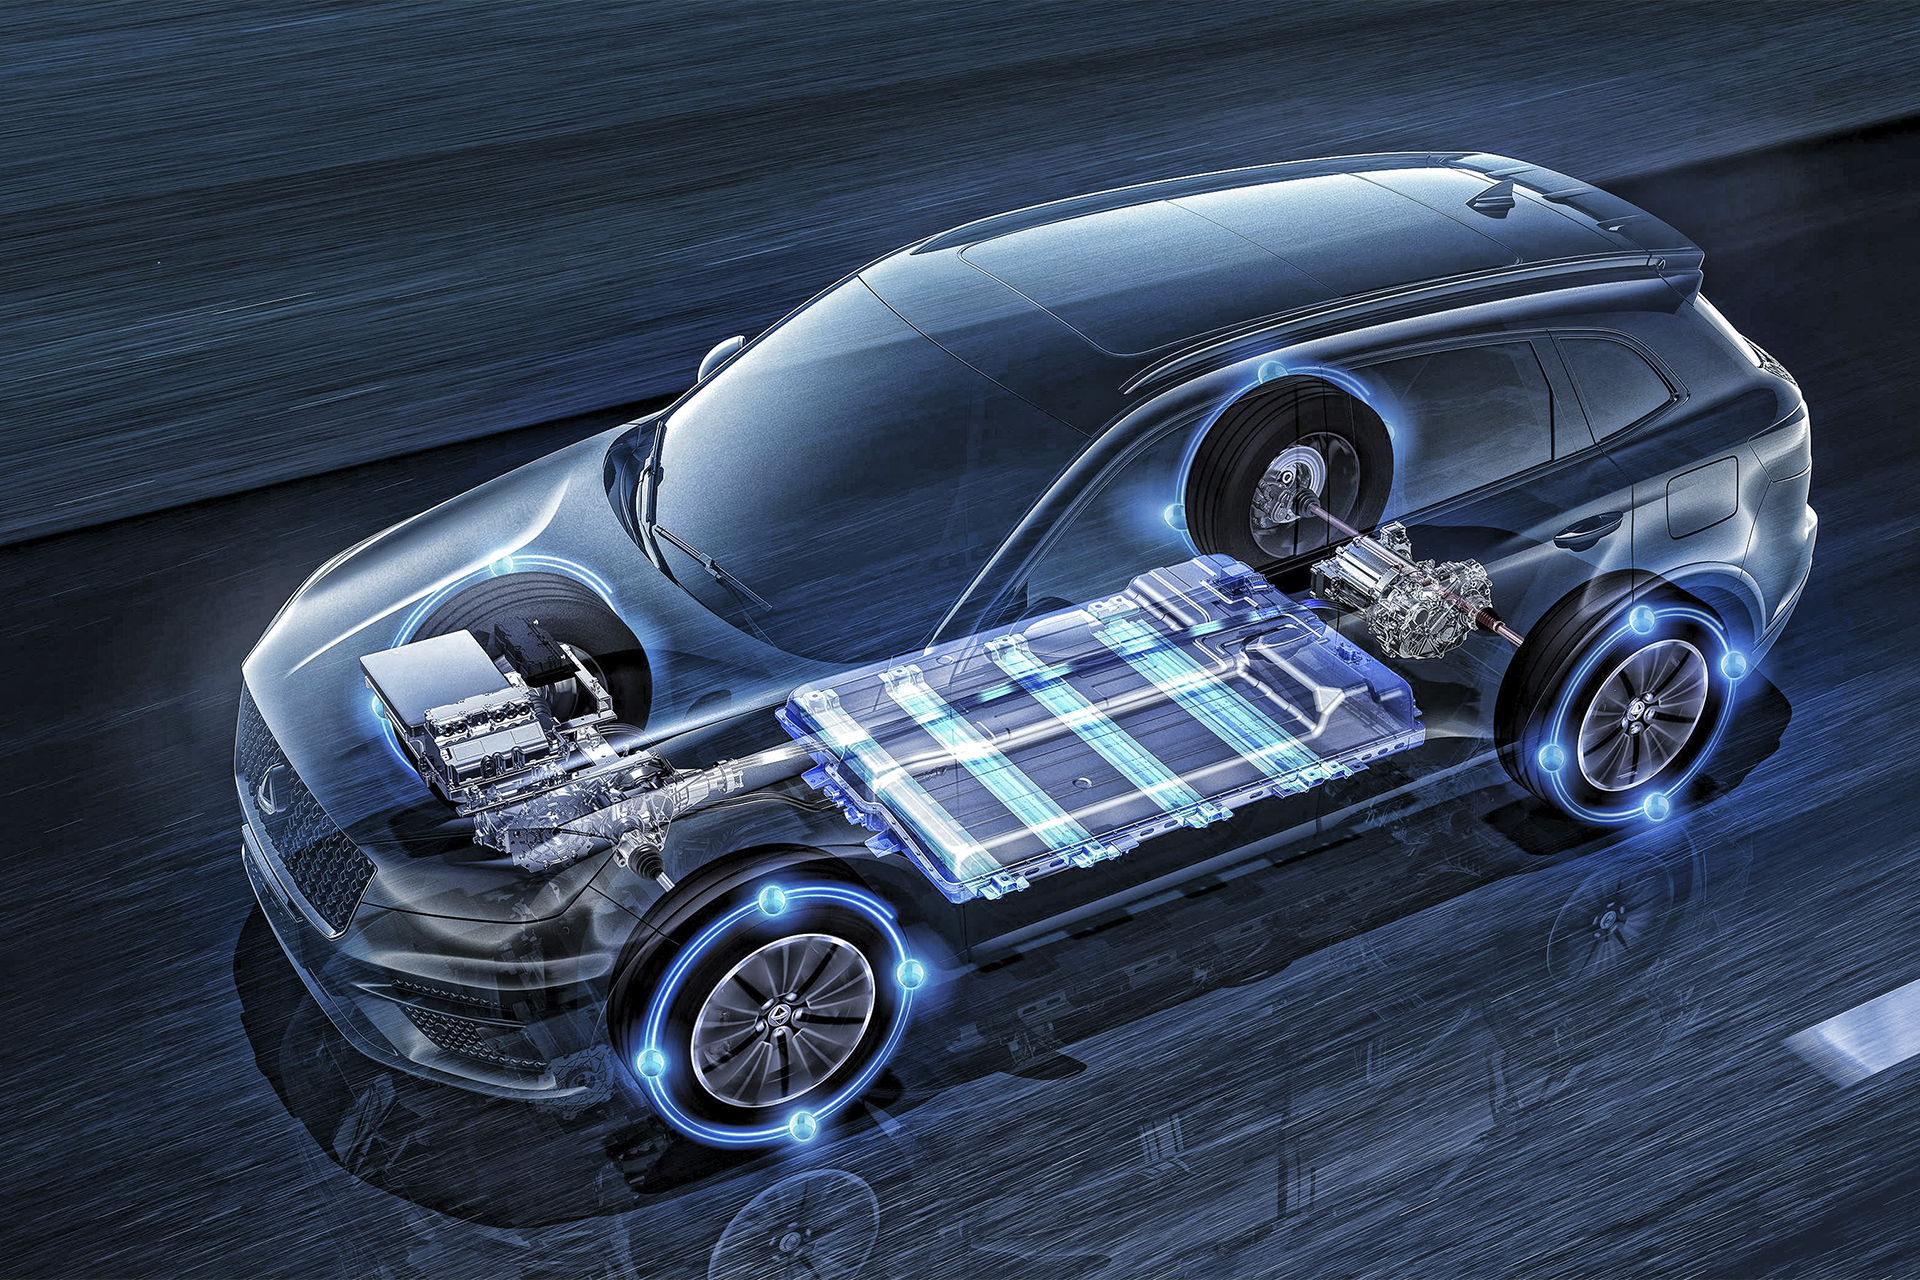 Bateria para veículos elétricos usando inteligência artificial tem melhoria média de 300% em relação as convencionais